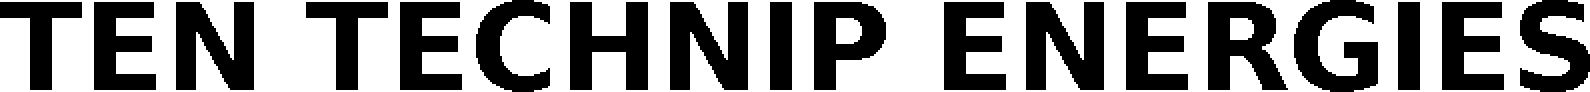 Trademark Logo TEN TECHNIP ENERGIES